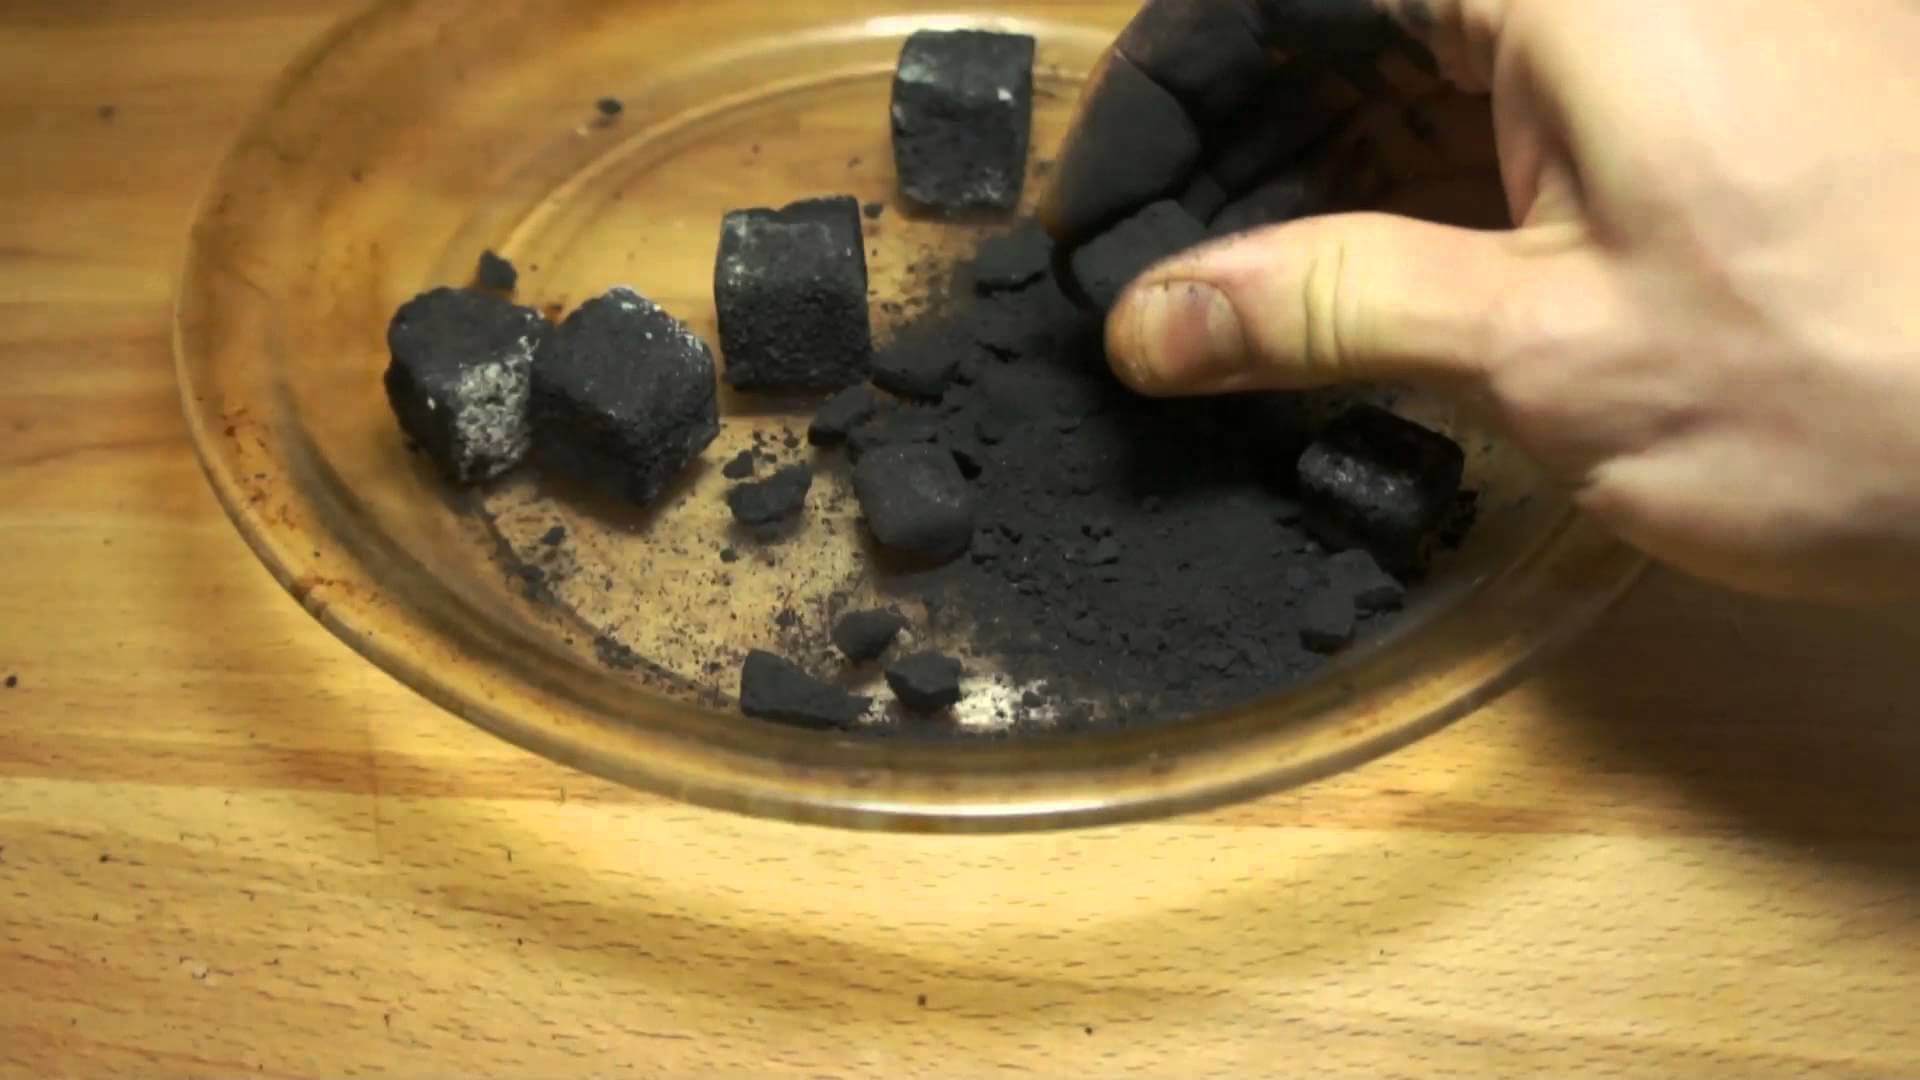 Relighting (Reusing) Hookah Coals 